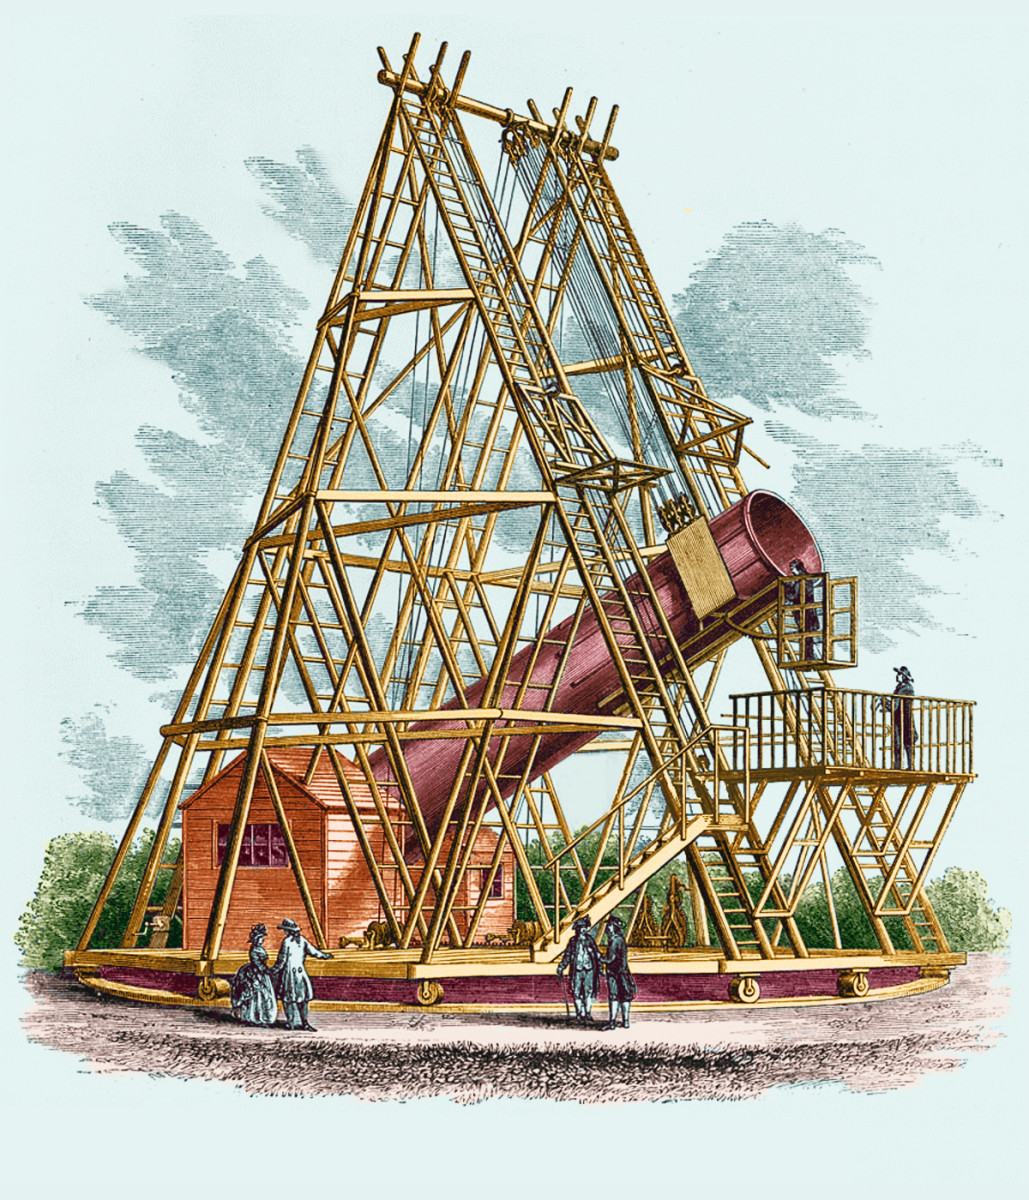 William Herschel and the Giant 40-foot Telescope